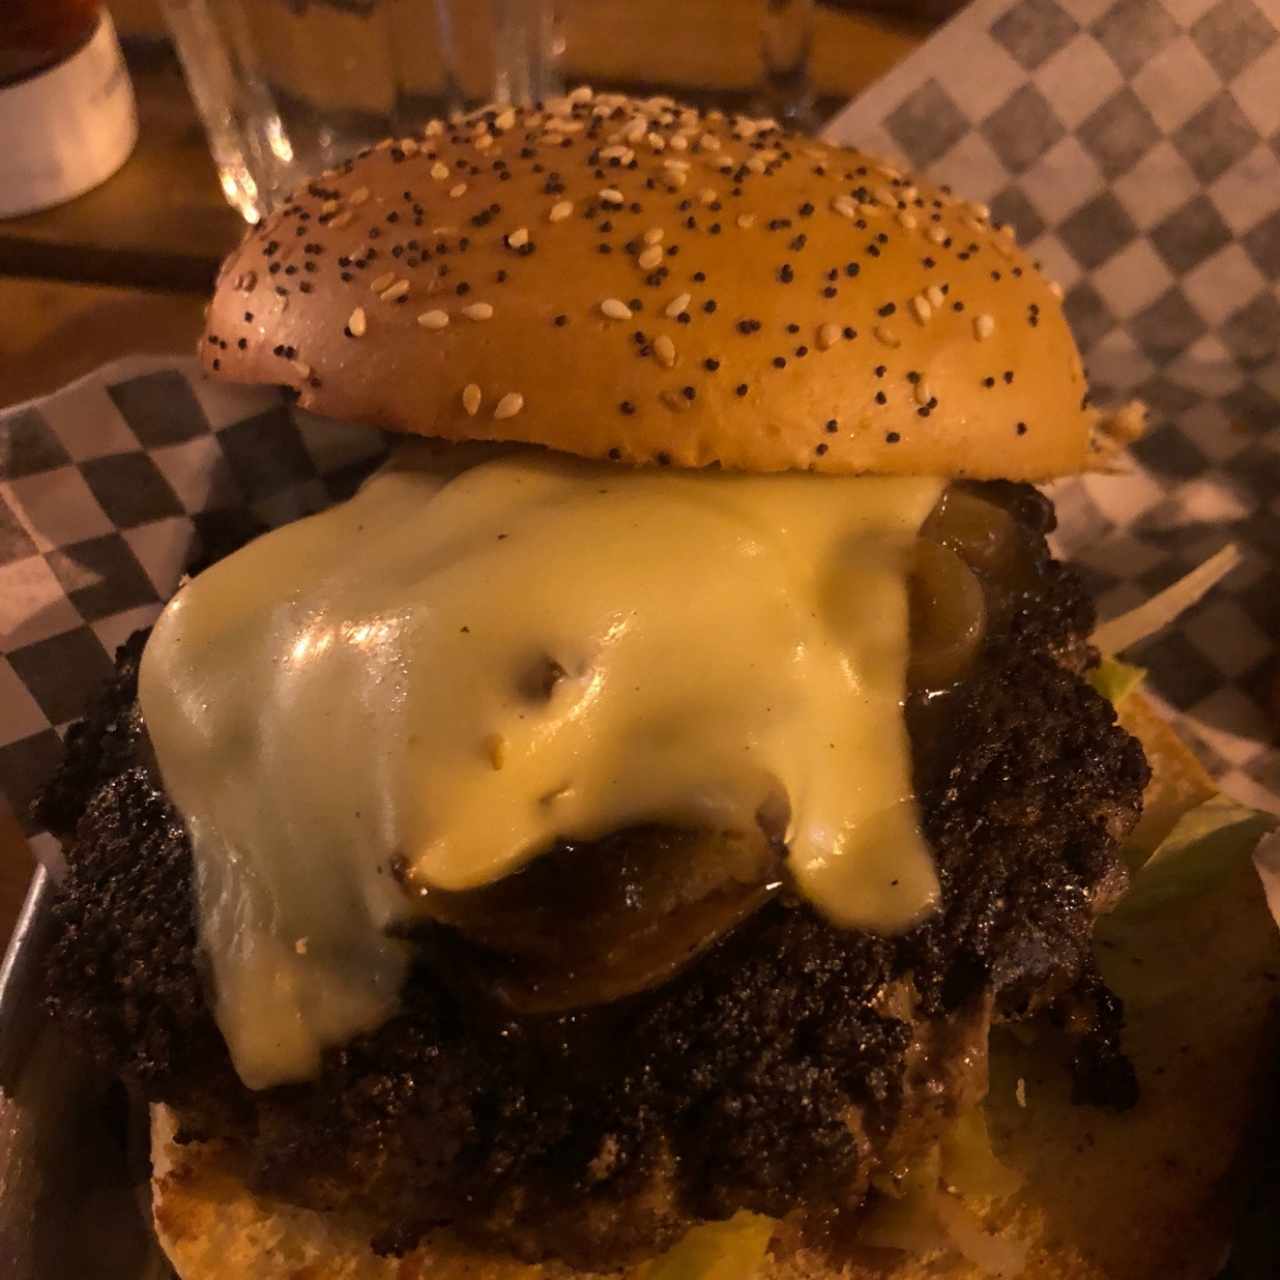 BURGER - Philly cheeseburger